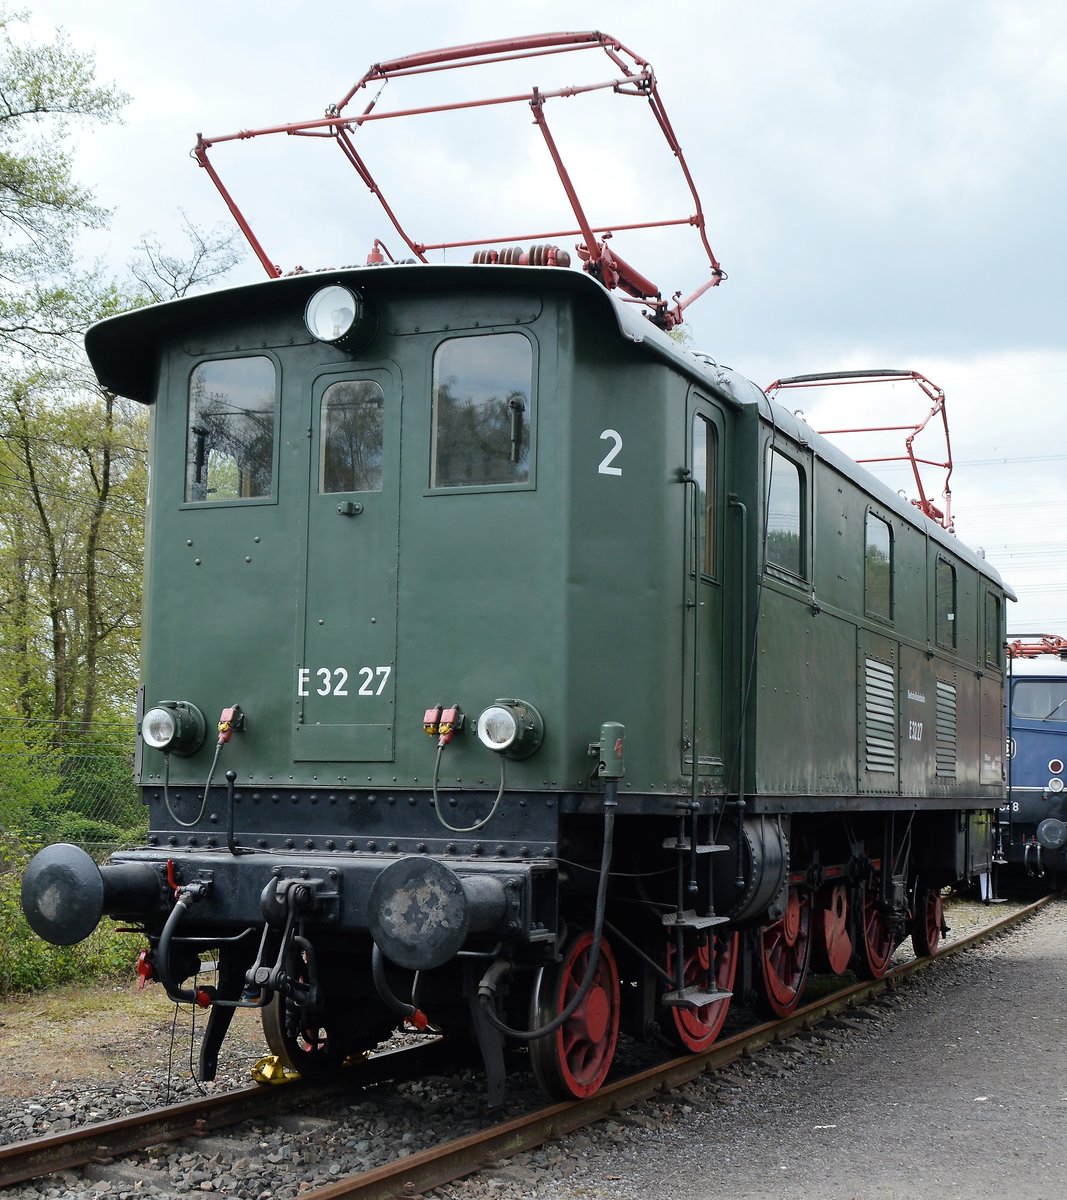 Jubiläumstage im Eisenbahnmuseum Bochum Dahlhausen am 29.04.2017 mit E 32 27